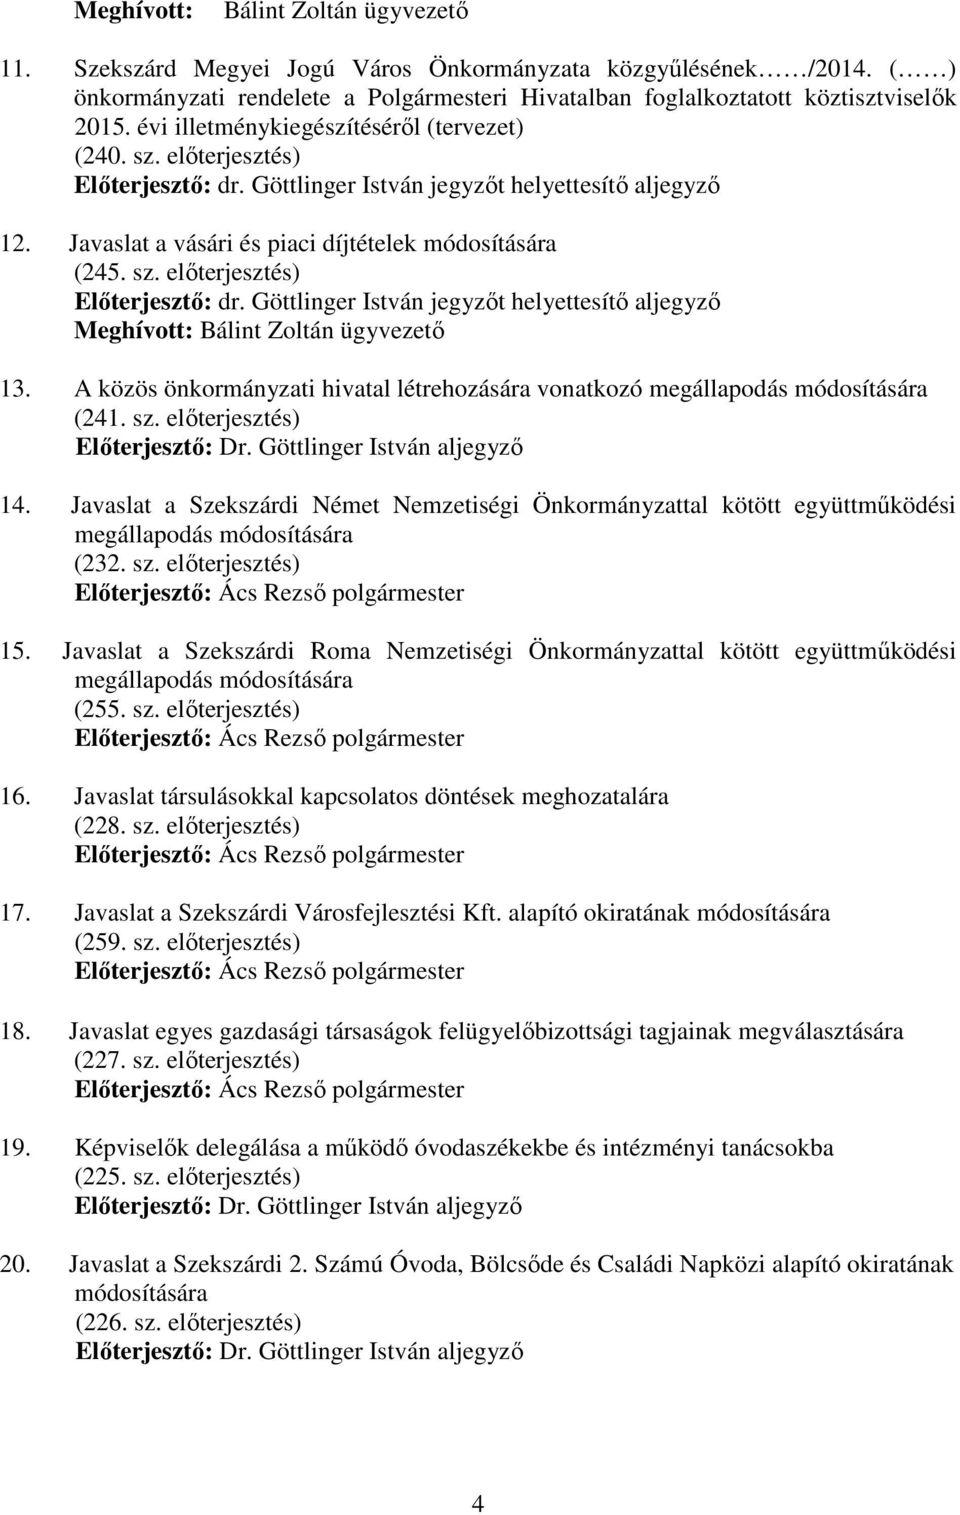 A közös önkormányzati hivatal létrehozására vonatkozó megállapodás módosítására (241. sz. elıterjesztés) Elıterjesztı: Dr. Göttlinger István aljegyzı 14.